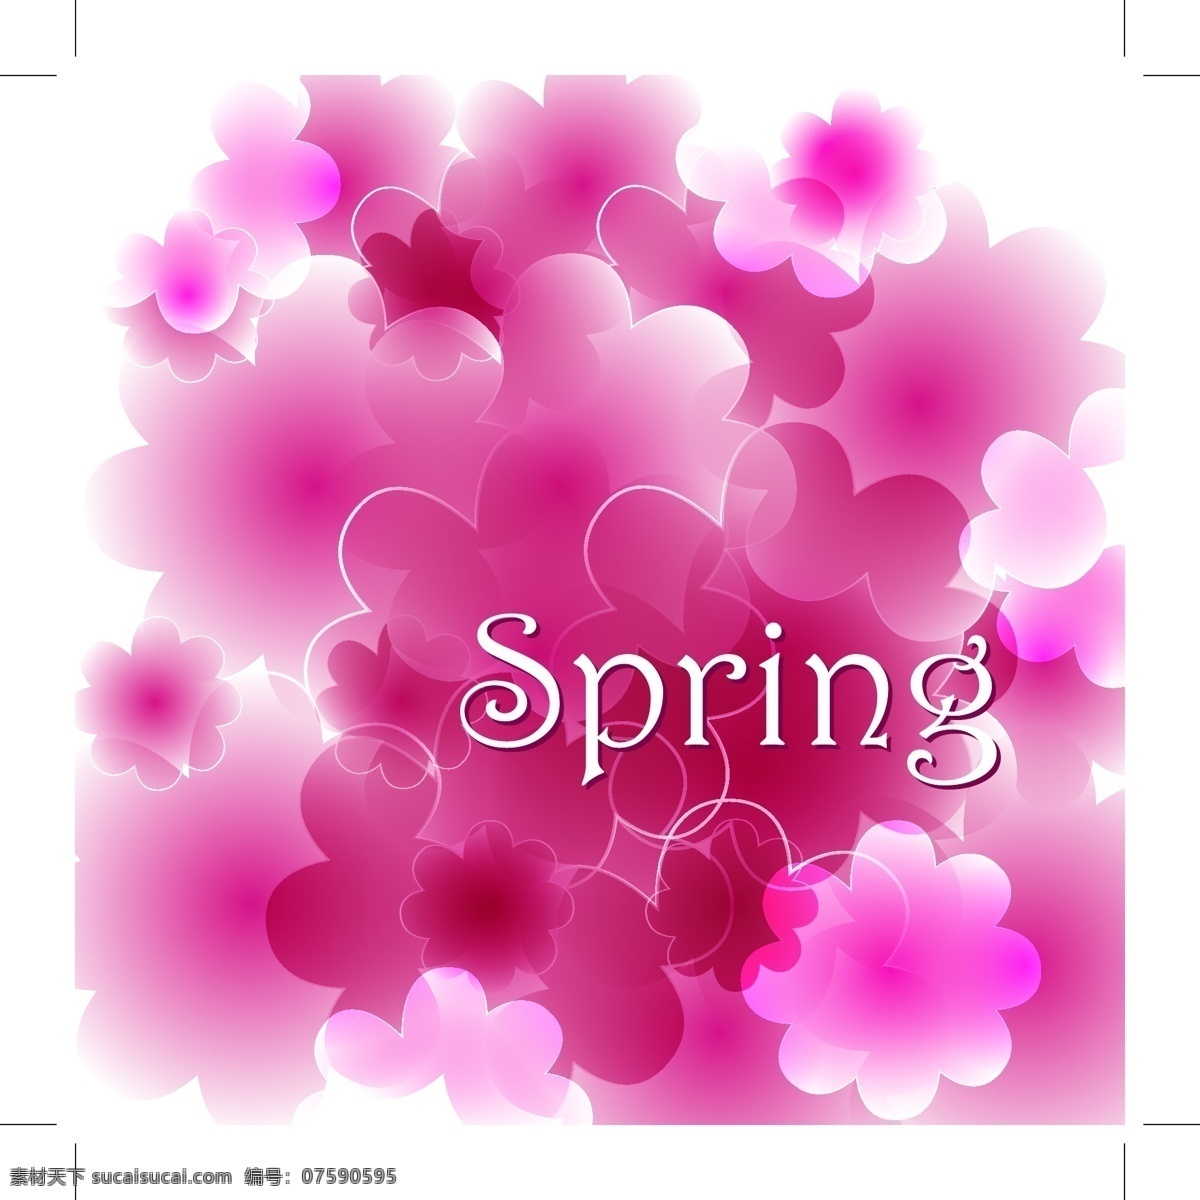 spring 春天 概念 背景 矢量 花朵 绿叶 树叶 线条 叶子 圆点 图